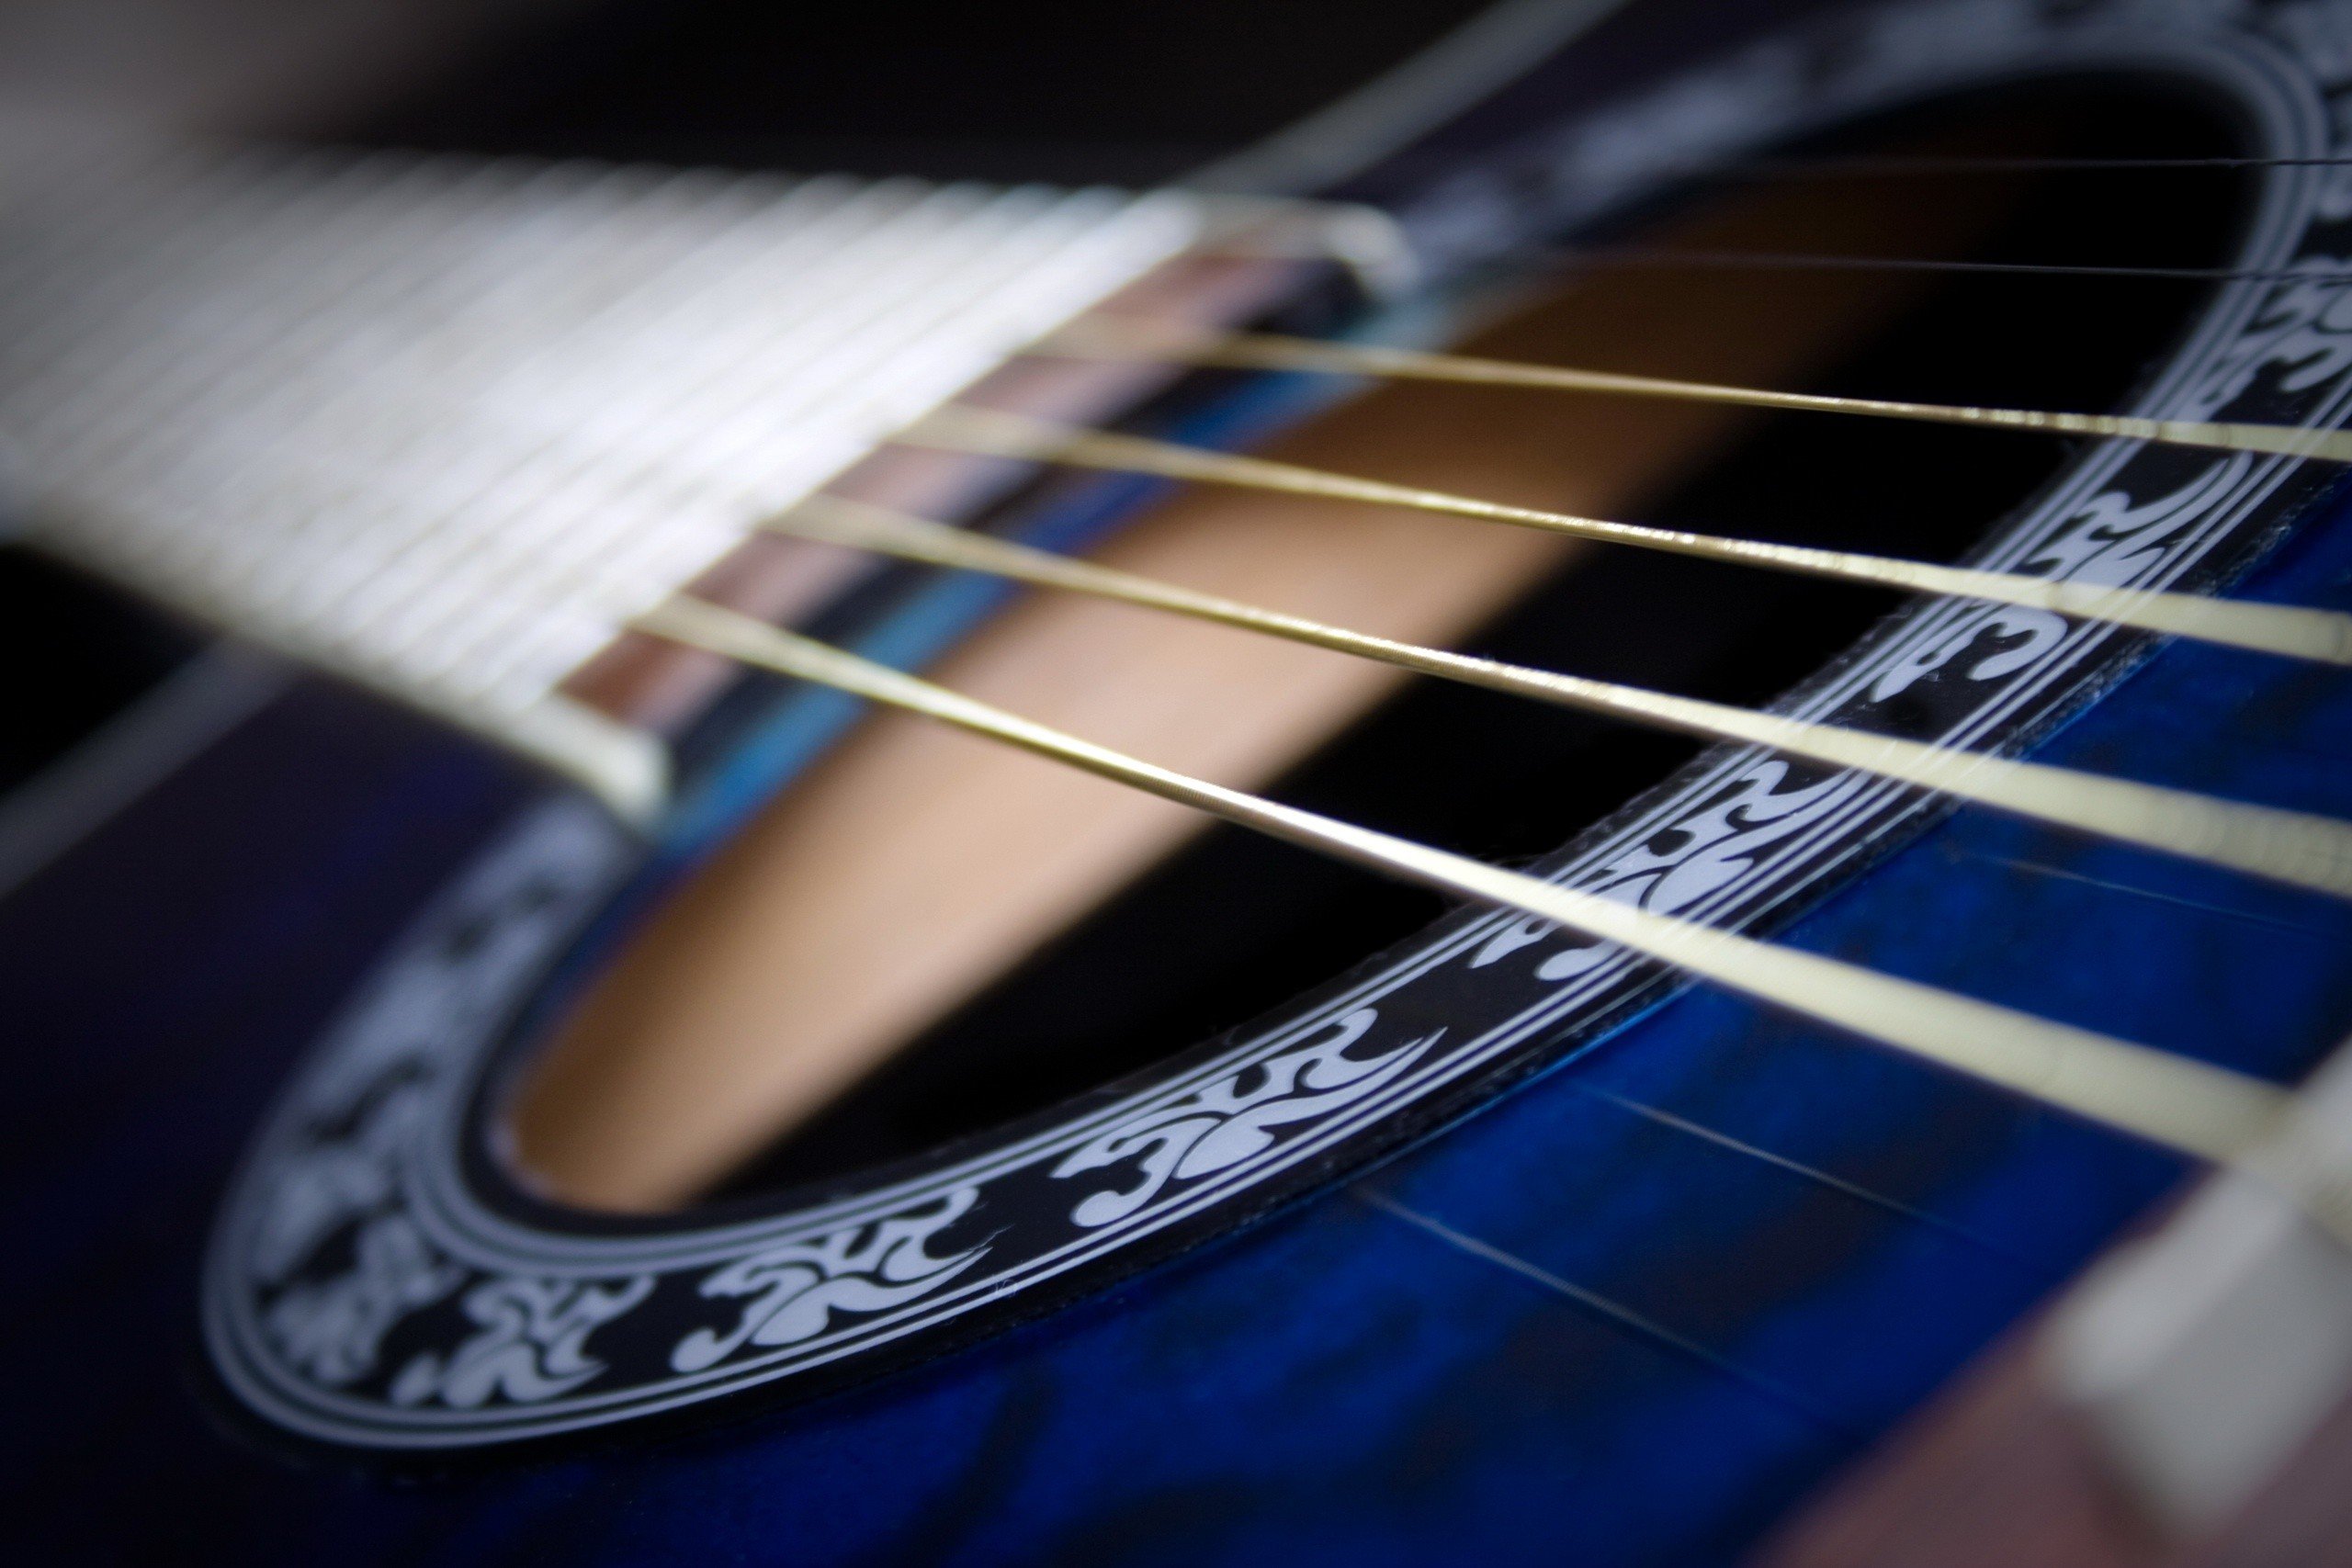 guitar, Musical instrument Wallpaper